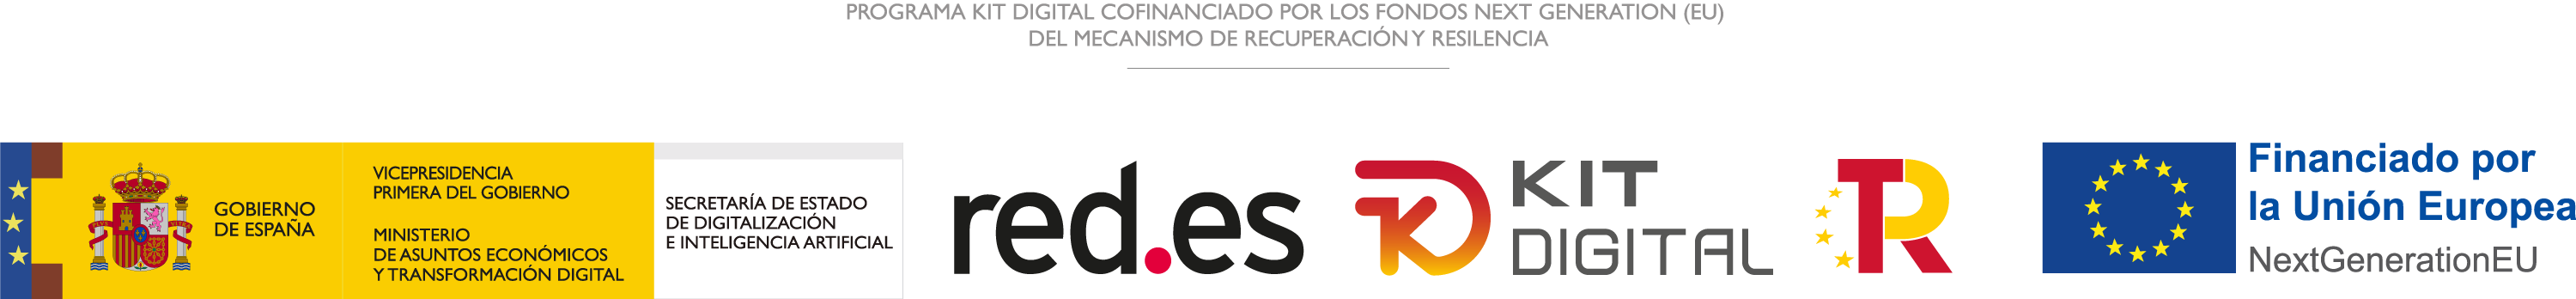 logos gobierno de España, red.es, kit digital, Plan de Recuperación, Transformación y Resiliencia y Unión Europea